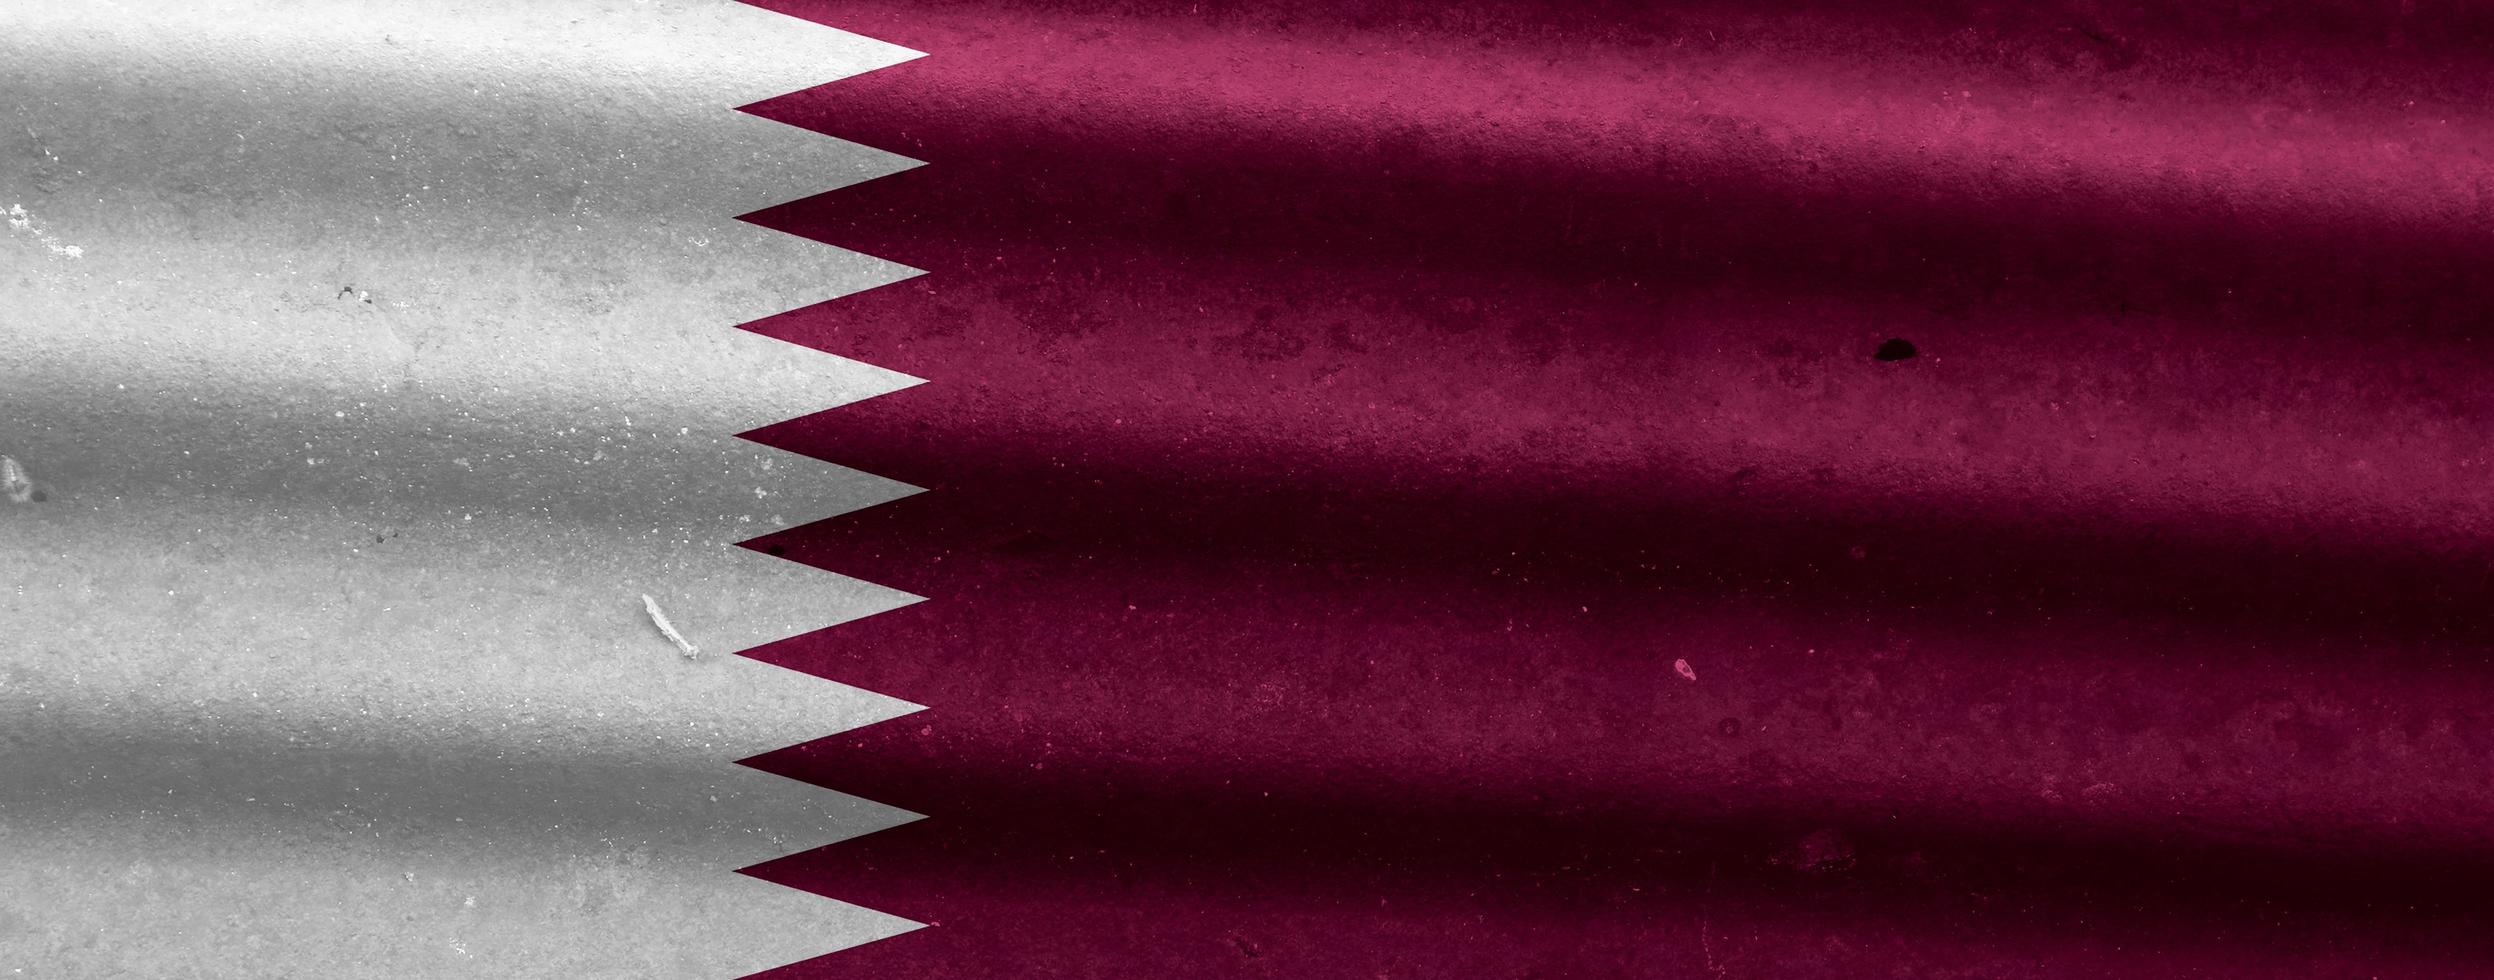 Qatar flag texture as a background photo